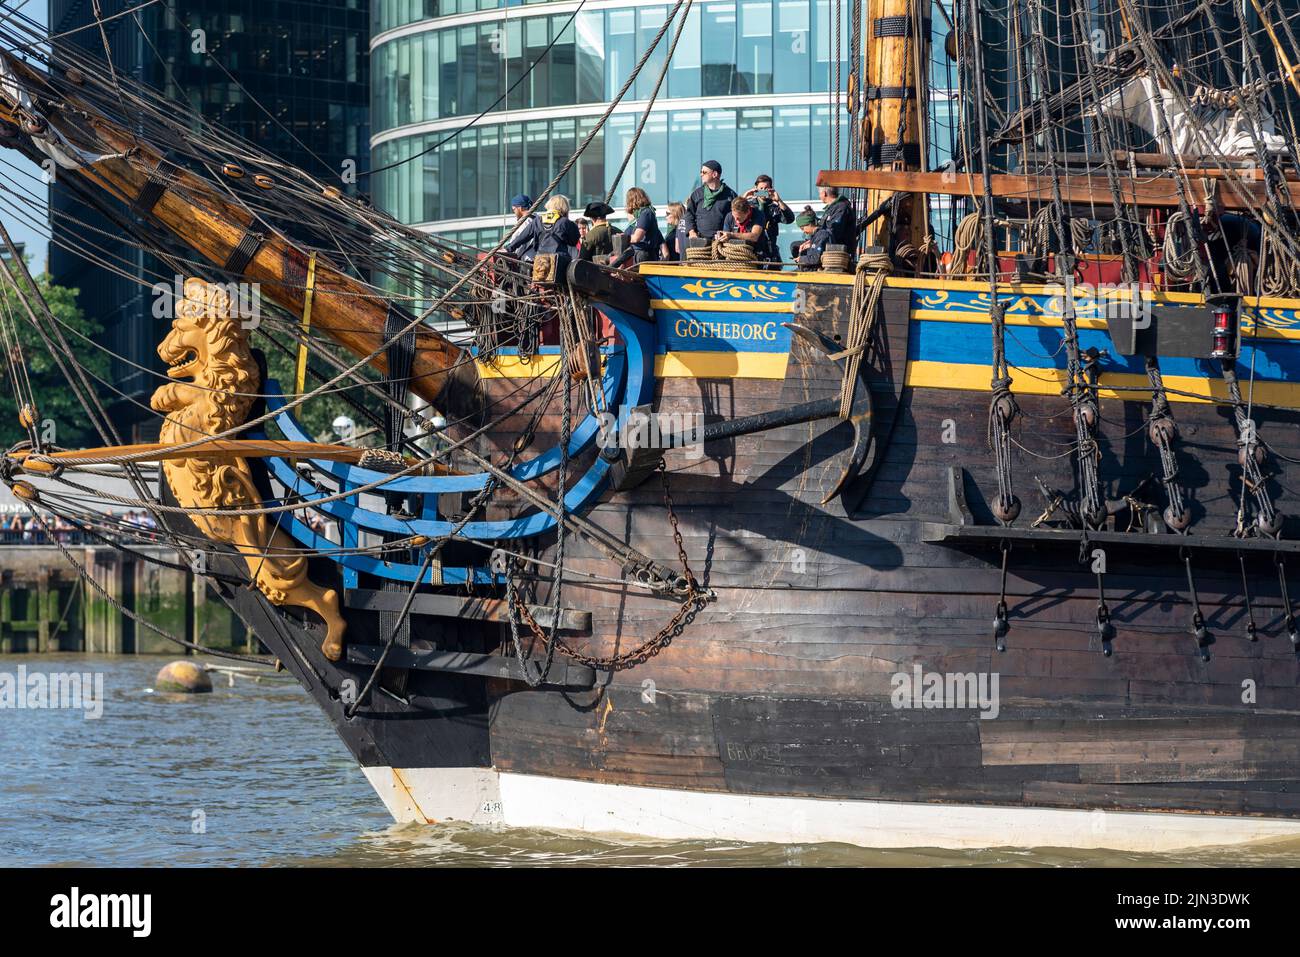 Bow, figurehead et équipage de Gotheborg de Suède, une réplique à voile de l'Indiaman Gotheborg I suédois, en visite à Londres, Royaume-Uni. Détails prow Banque D'Images